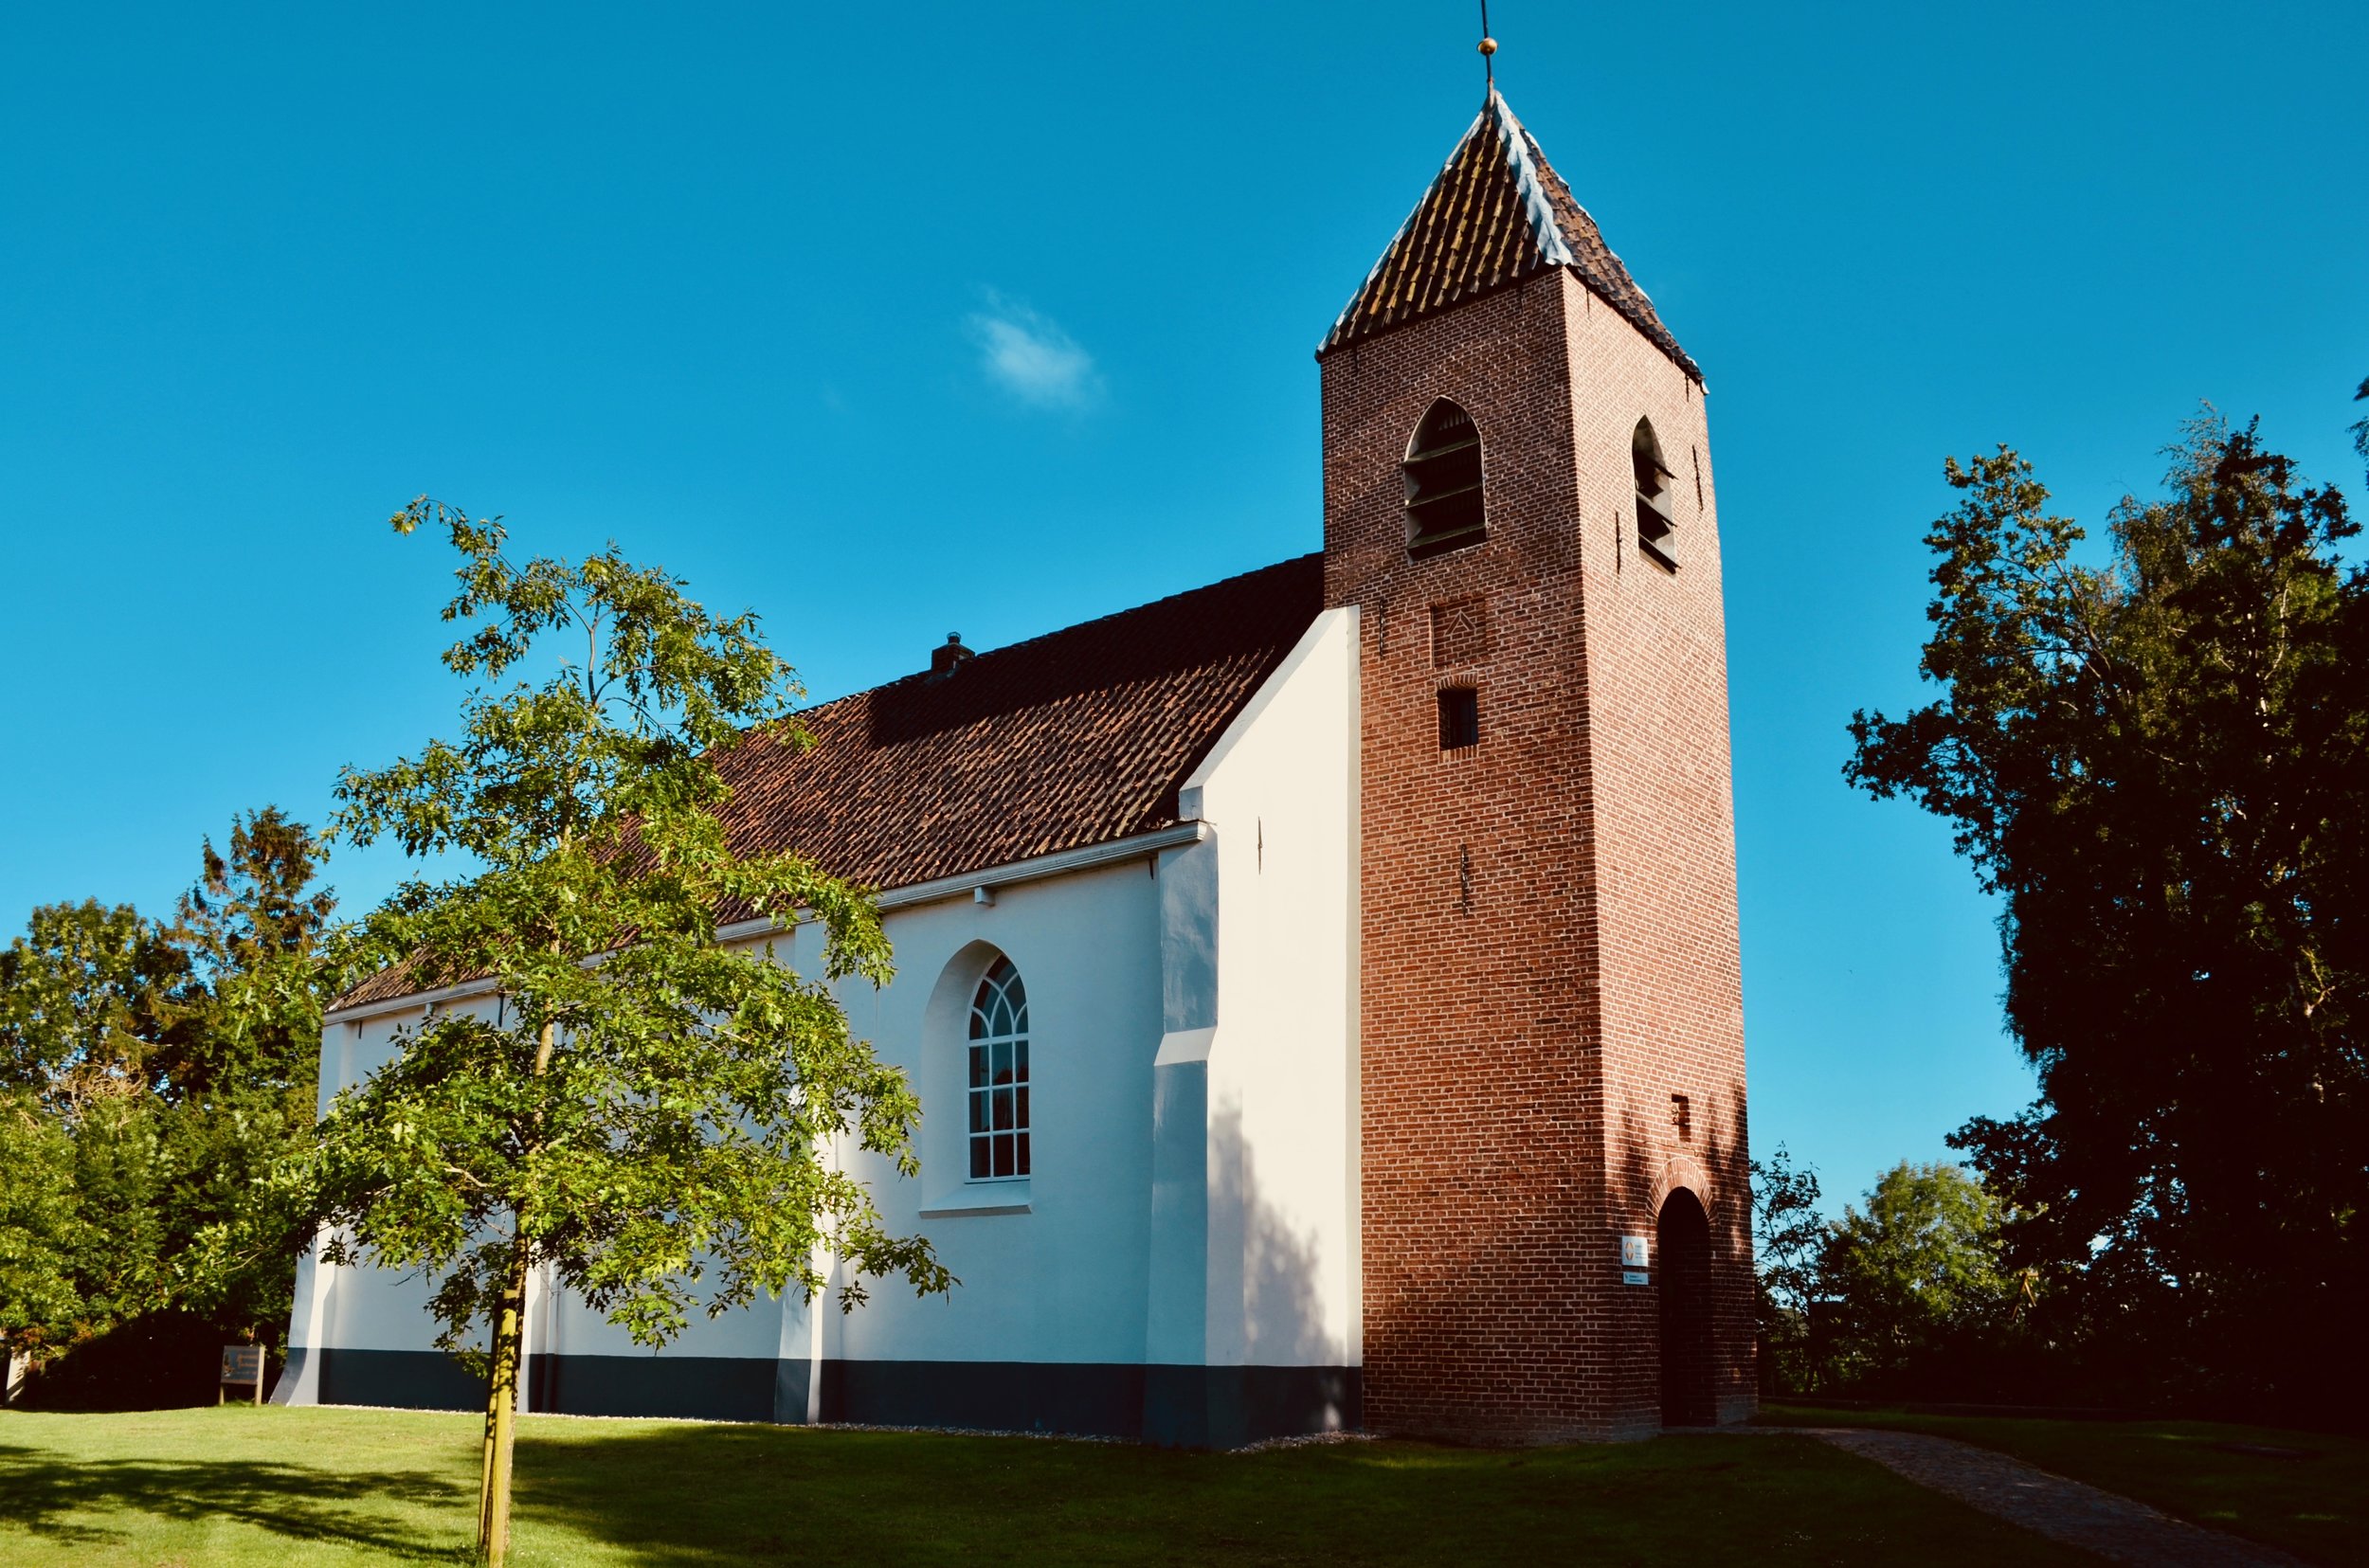  Michaëlkerk, Mensingeweer, Holland. 